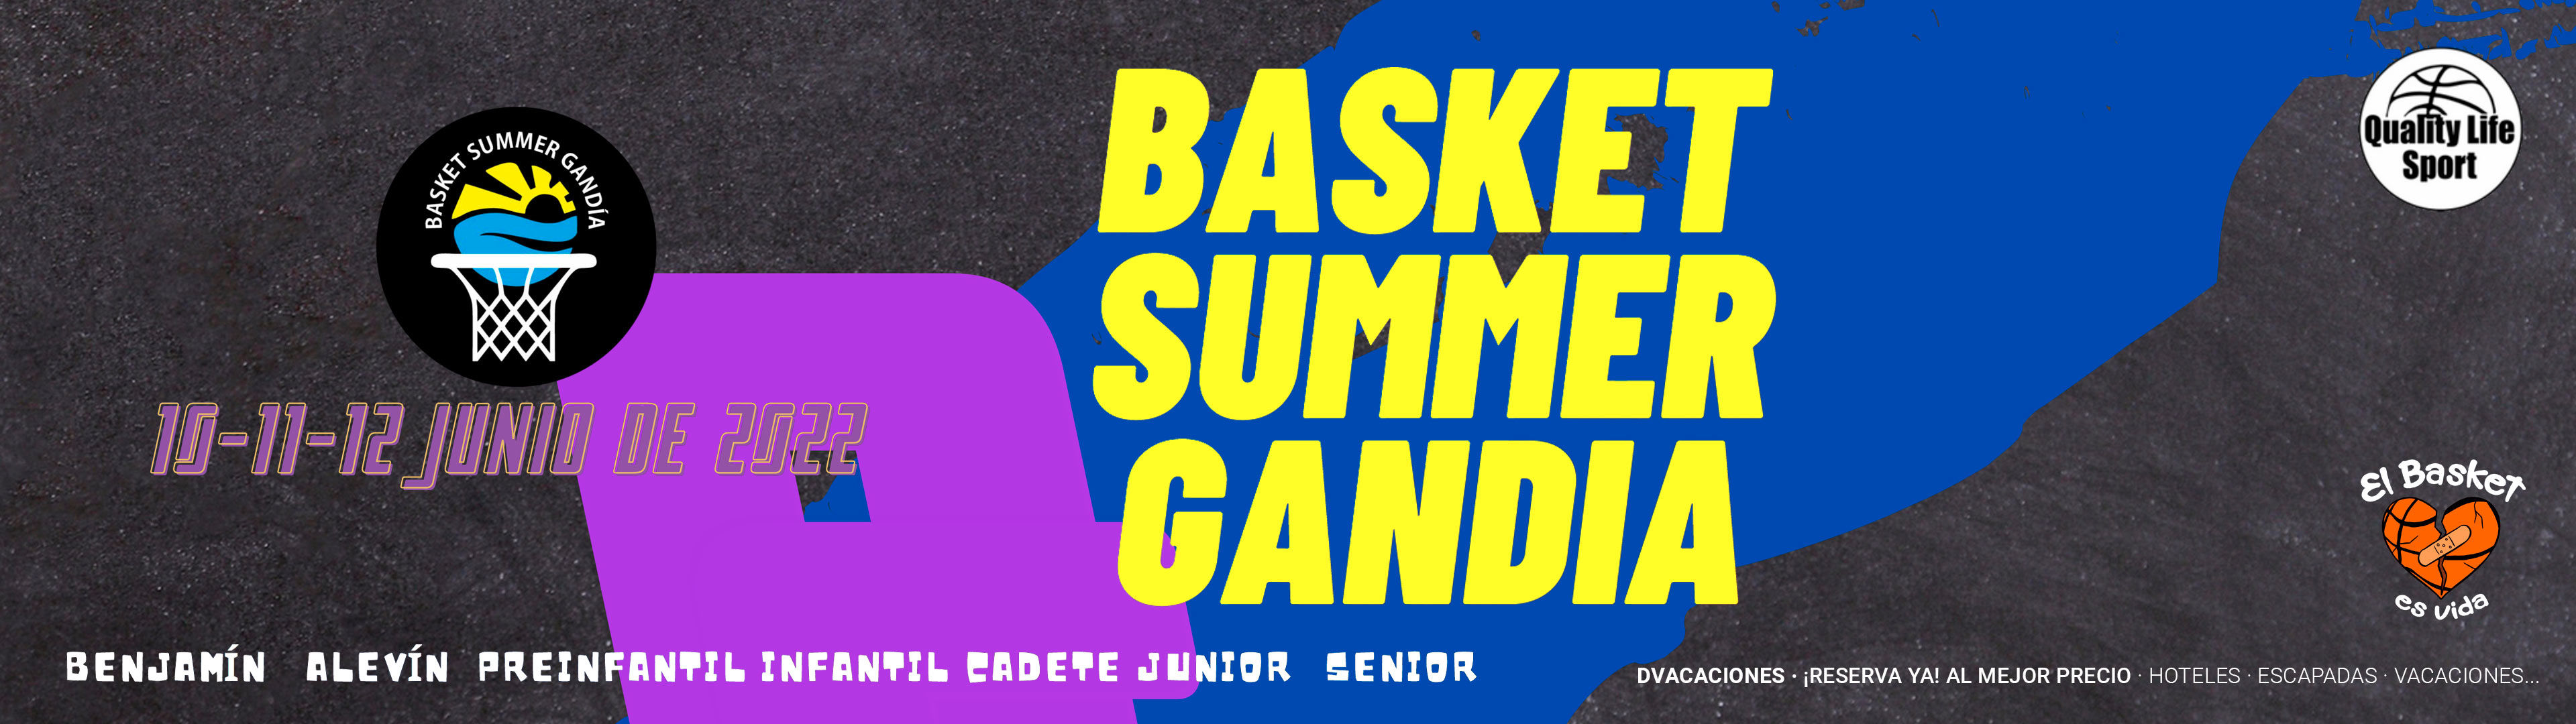 BASKET SUMMER GANDIA - BASKET SUMMER GANDIA - 10 al 12 de Junio de 2022